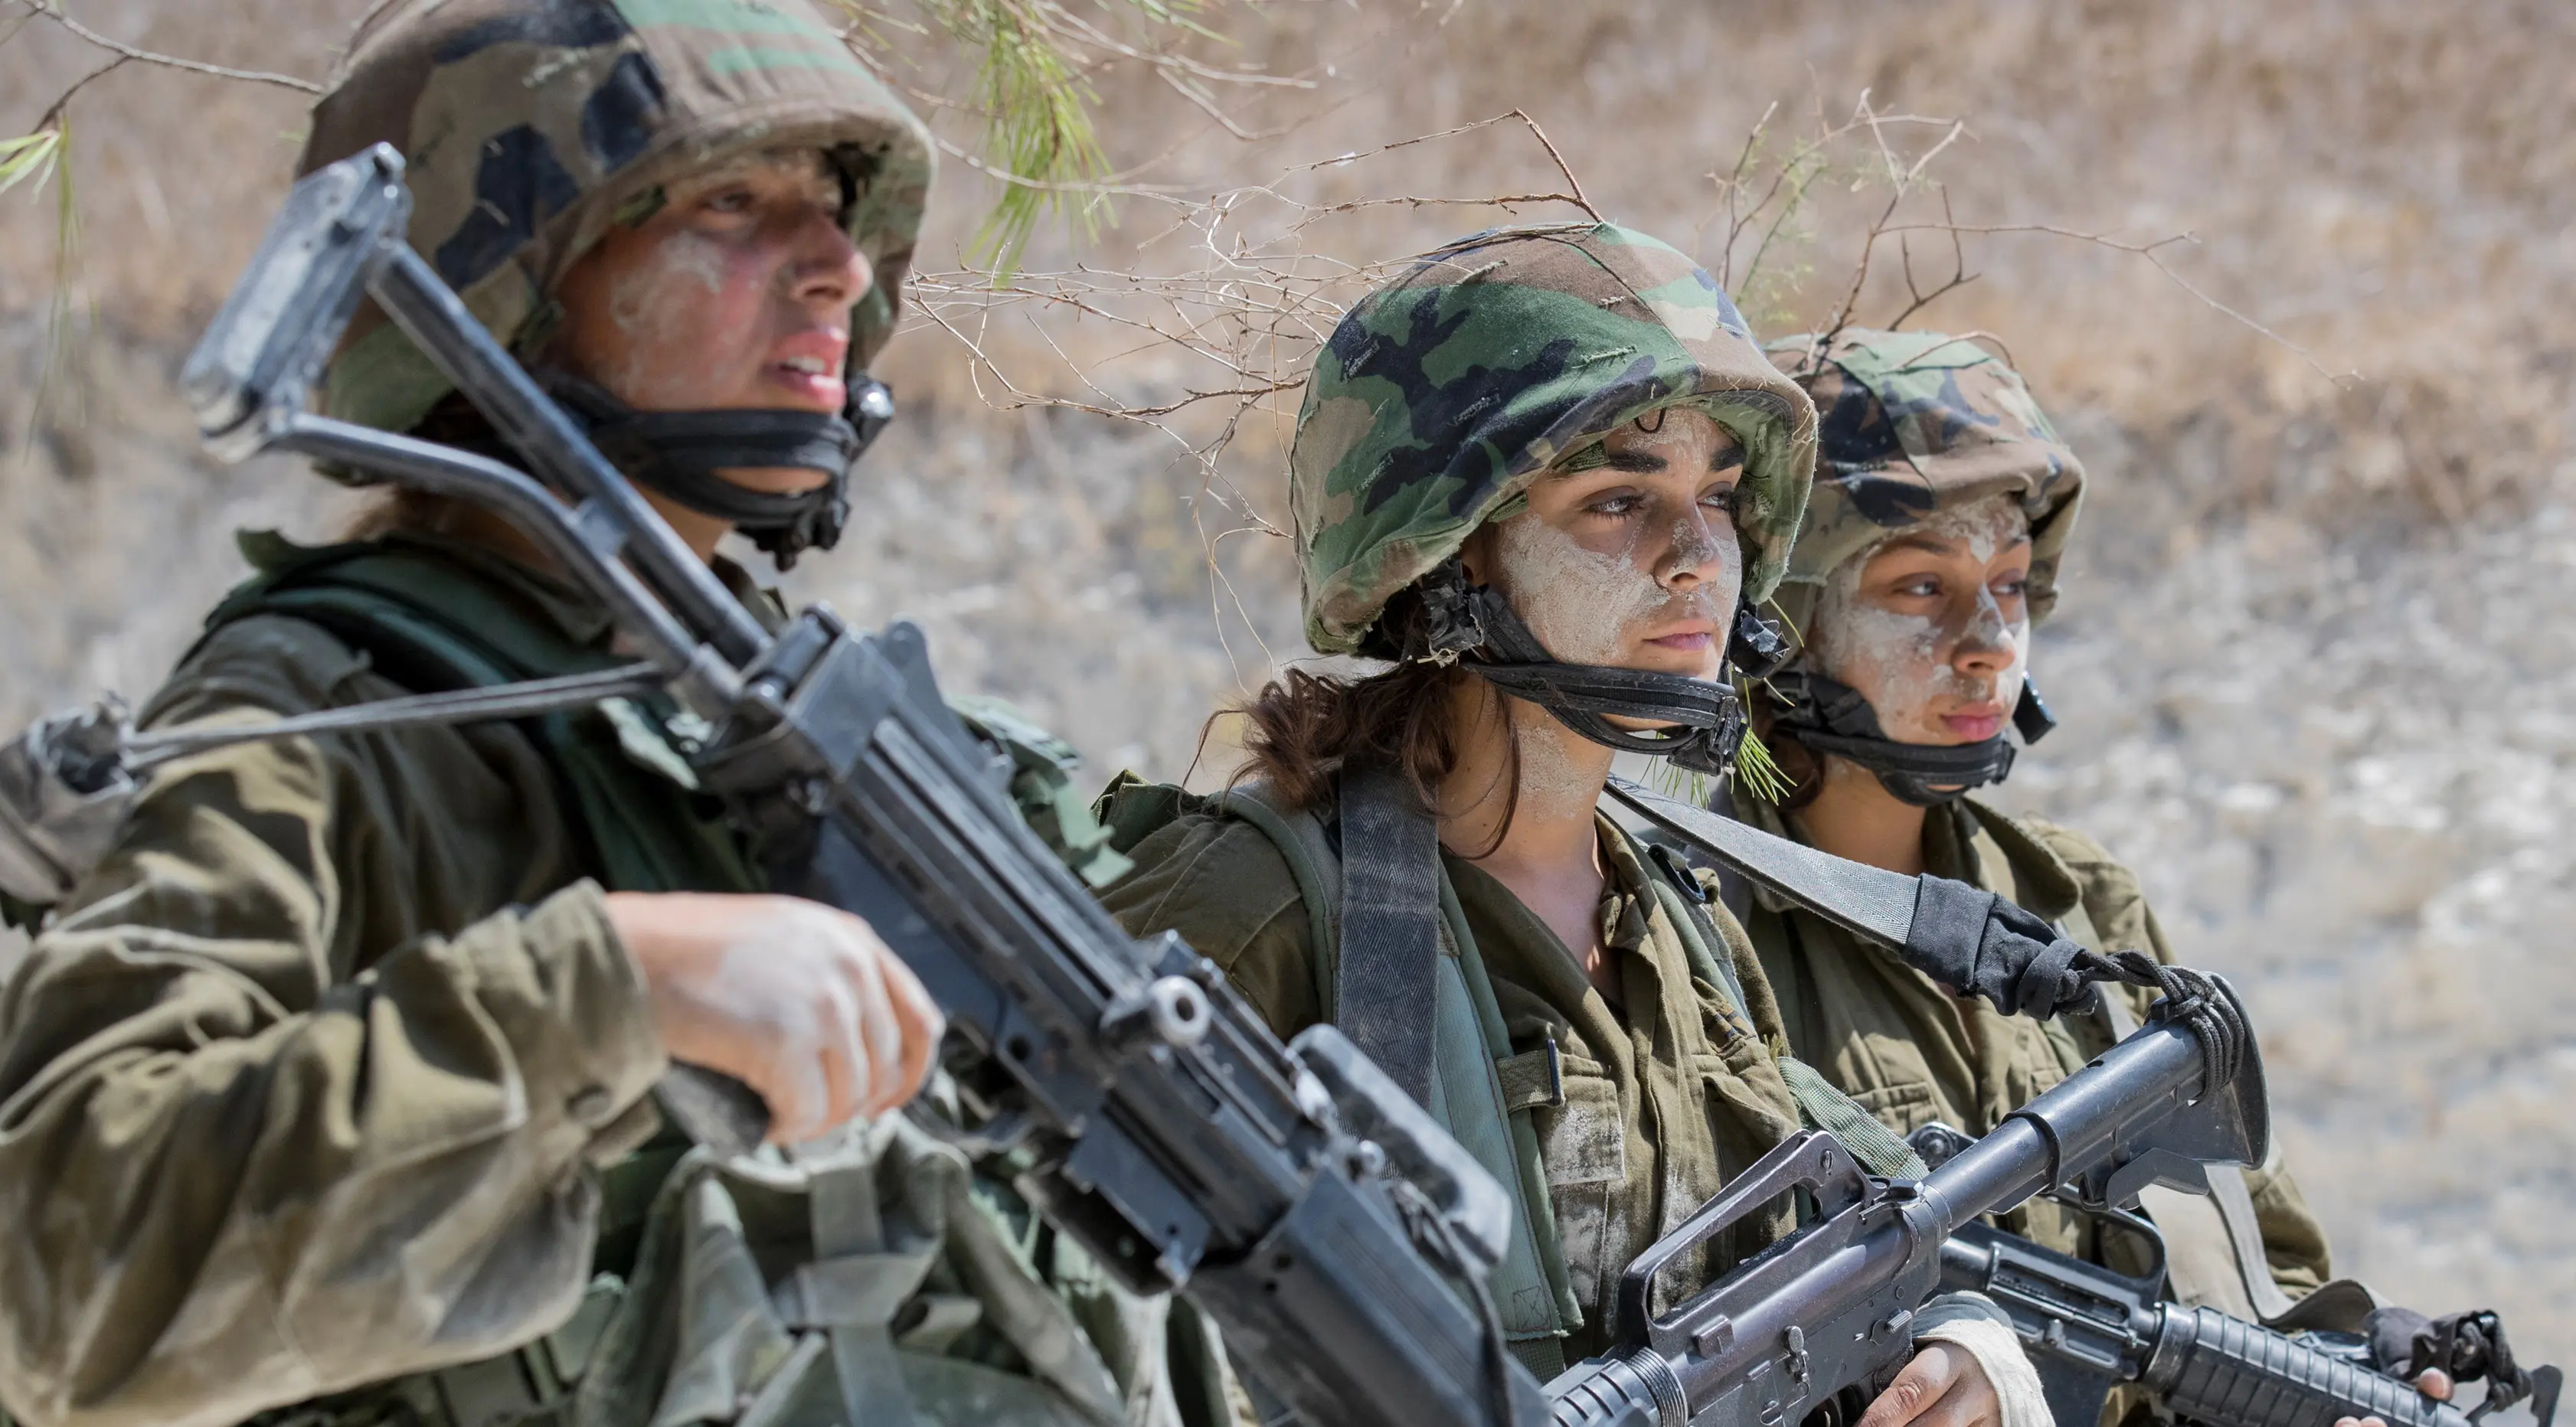 Tentara wanita Israel dari Batalion Bardalas saat menjalani latihan di sebuah kamp militer di dekat Yoqne'am Illit, Israel Utara, (13/9). Batalion Bardales diperkuat oleh tentara pria dan wanita. (AFP Photo/Jack Guez)